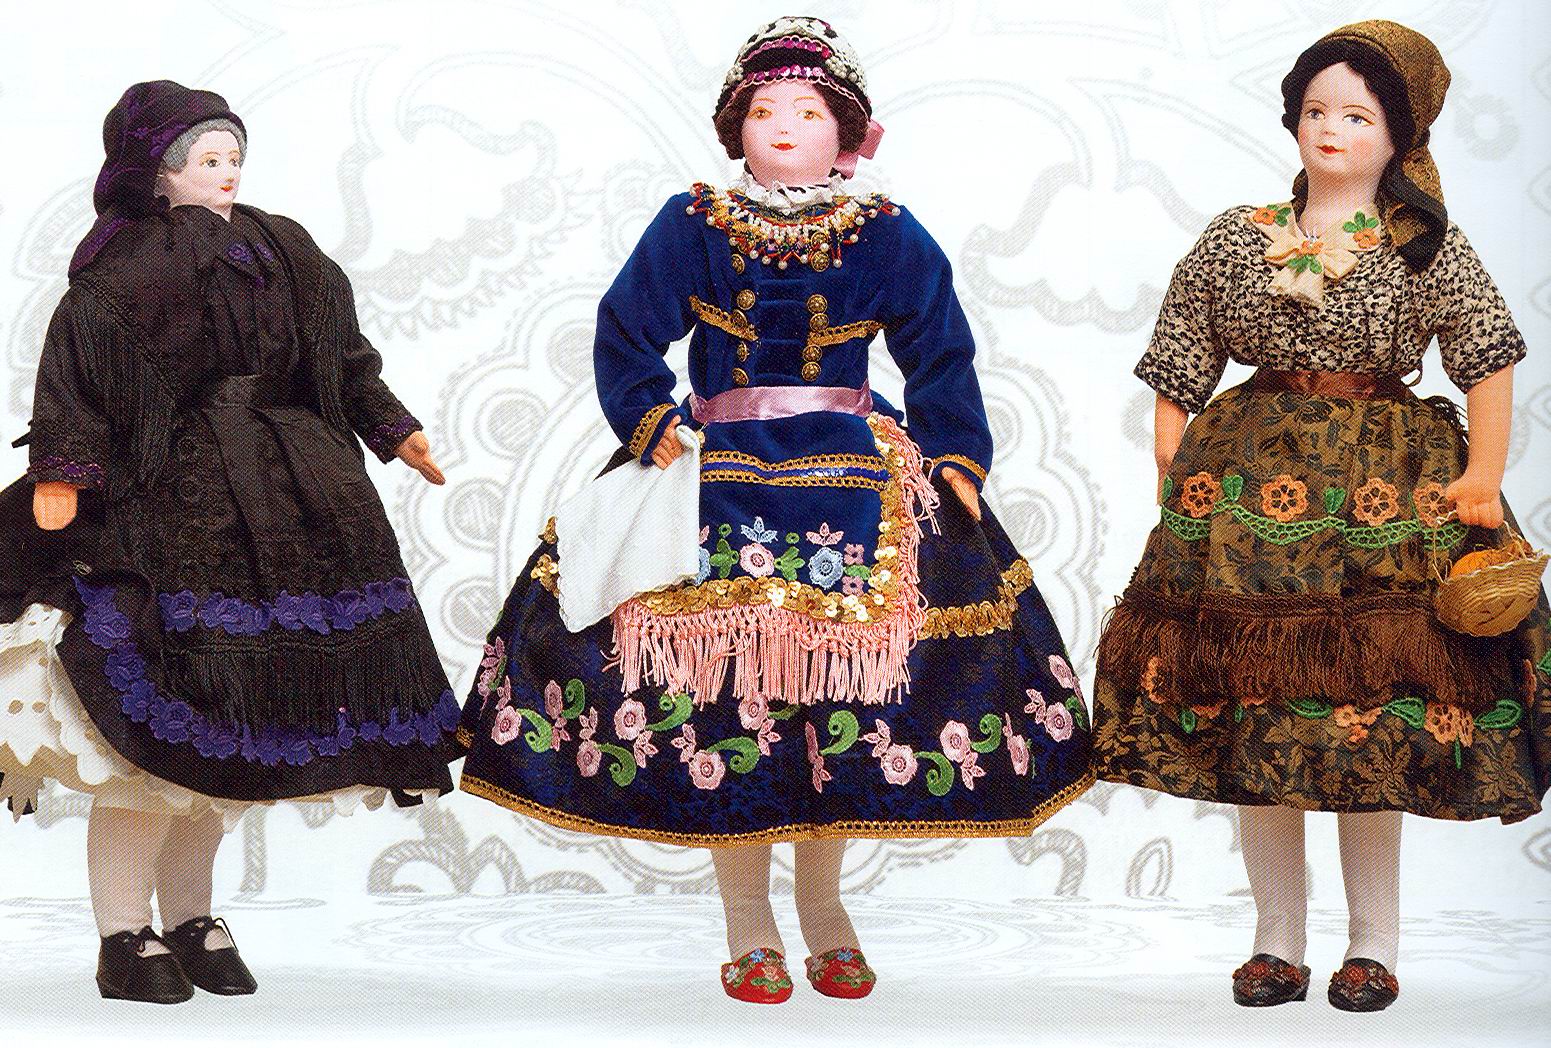 Sárközi női viselet, s a híres lakodalom - Netfolk: népművészet, hagyományok